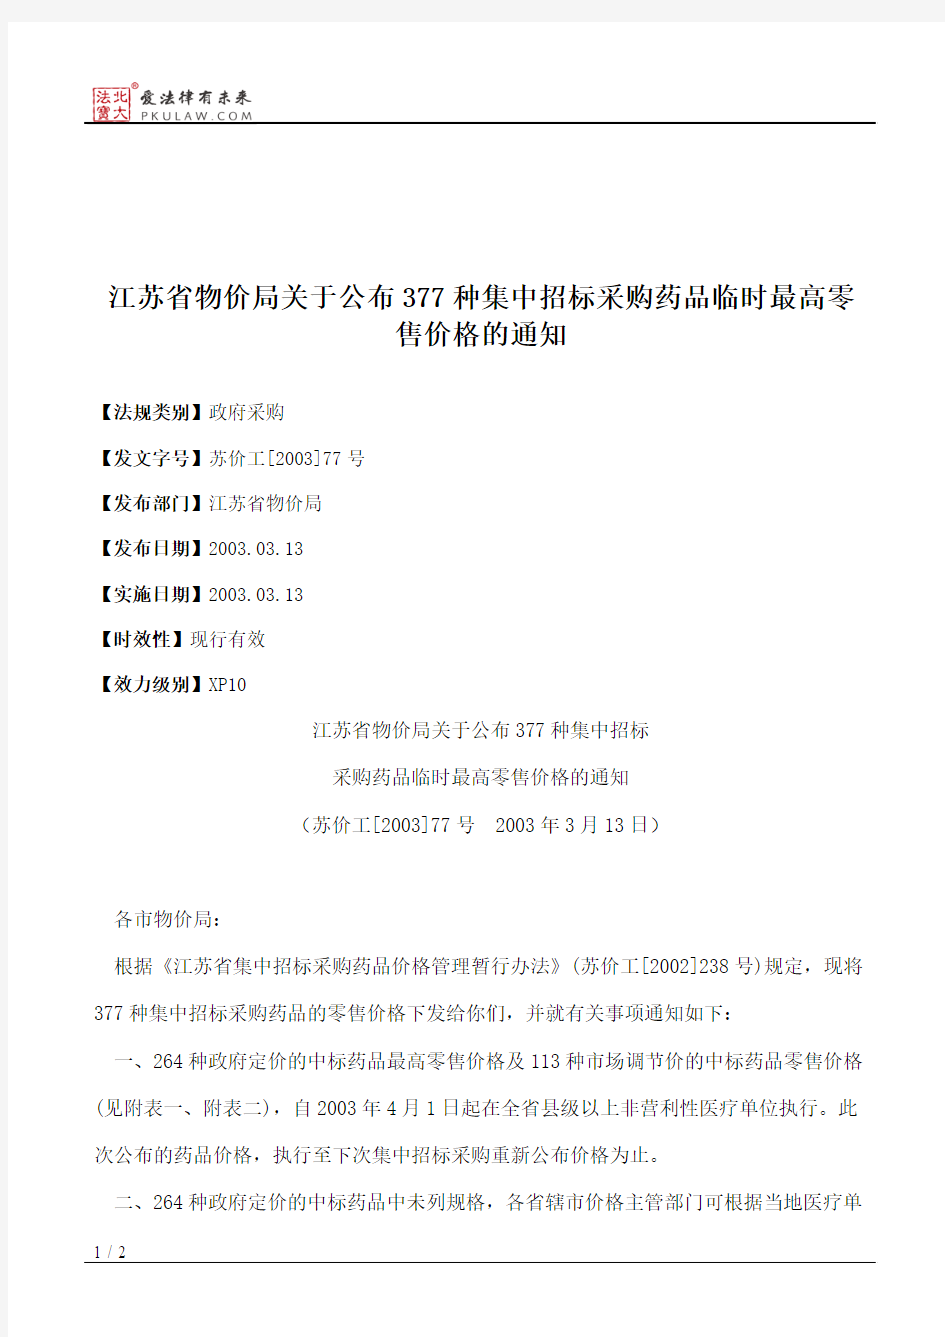 江苏省物价局关于公布377种集中招标采购药品临时最高零售价格的通知